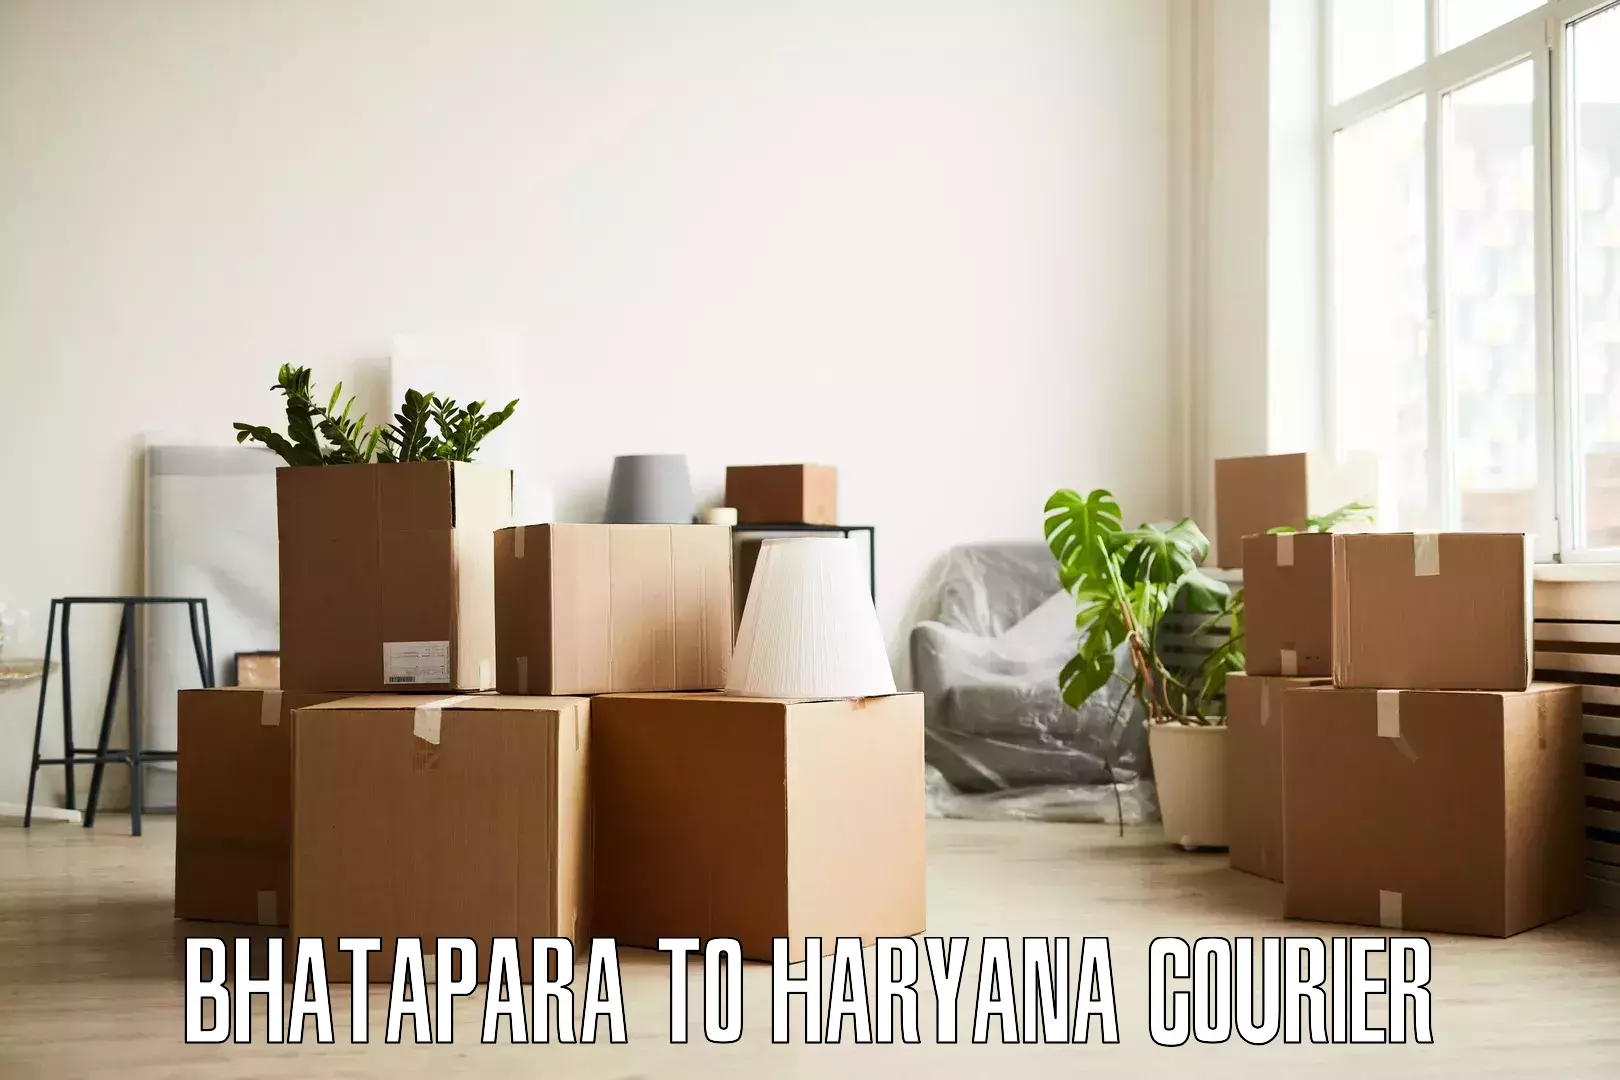 Customized moving solutions Bhatapara to Ambala